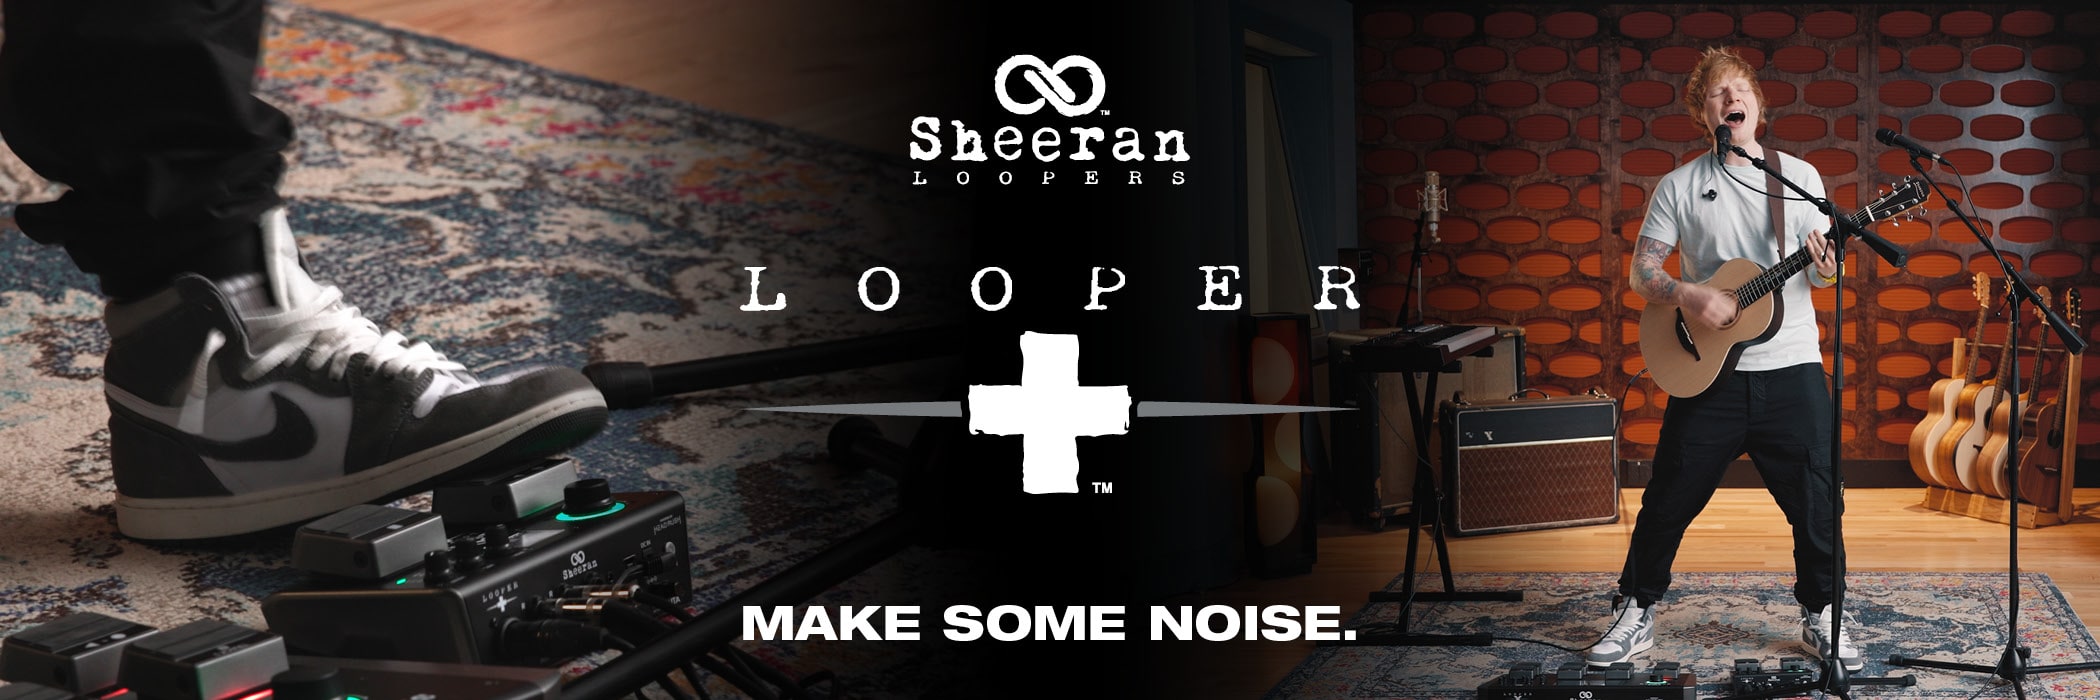 Banner for Sheeran Loopers Looper +